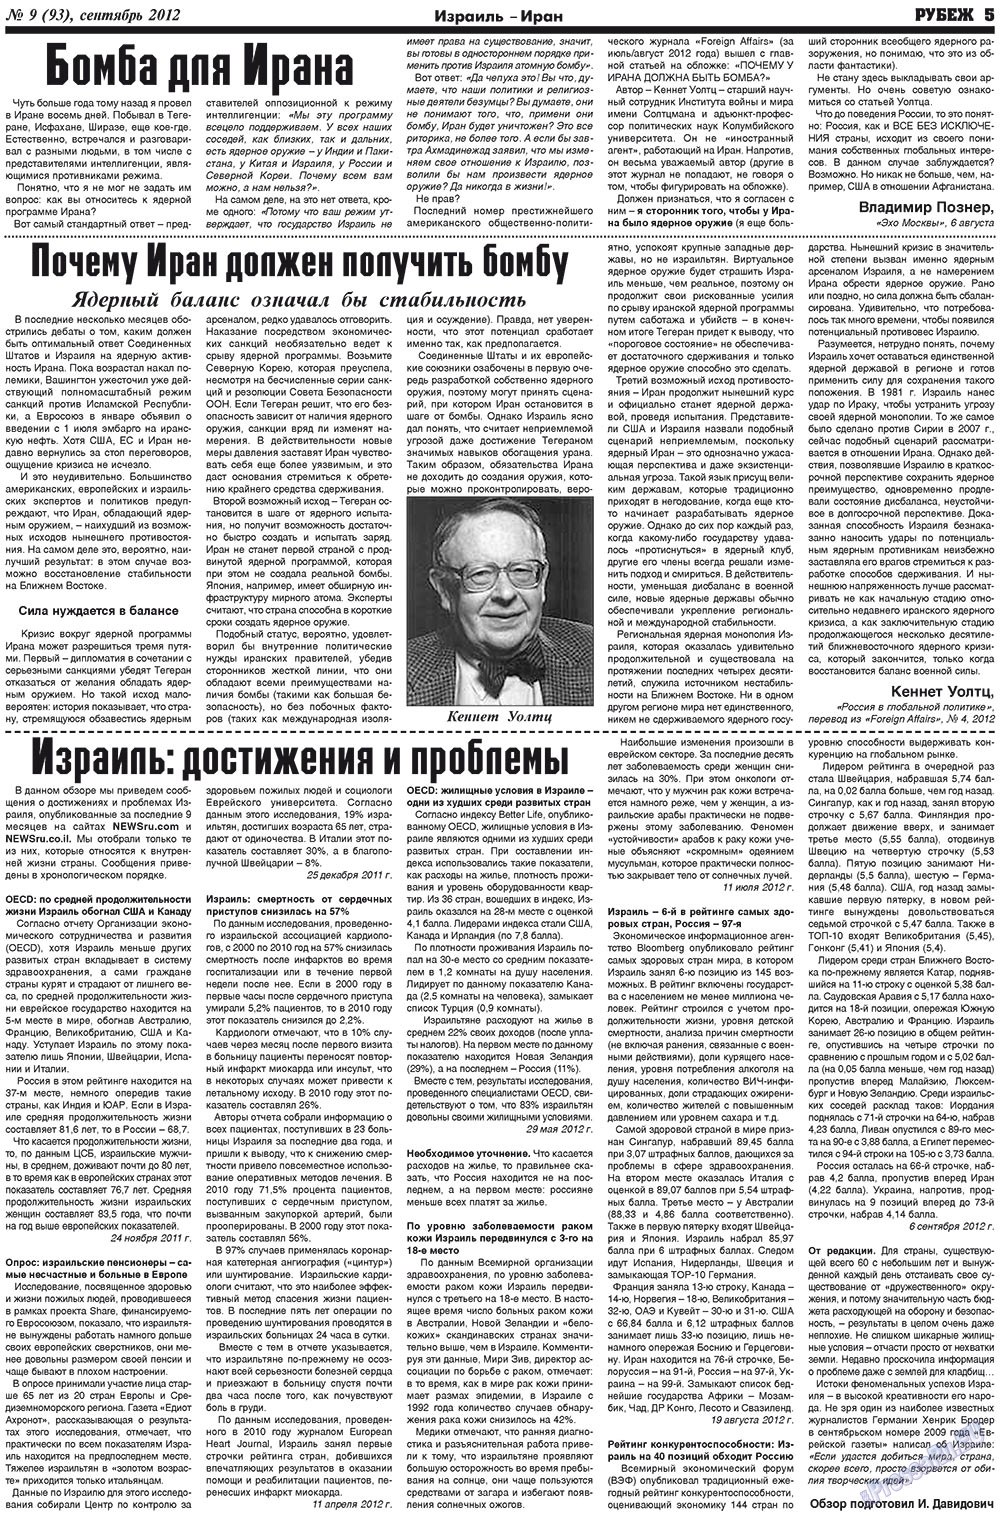 Рубеж (газета). 2012 год, номер 9, стр. 5